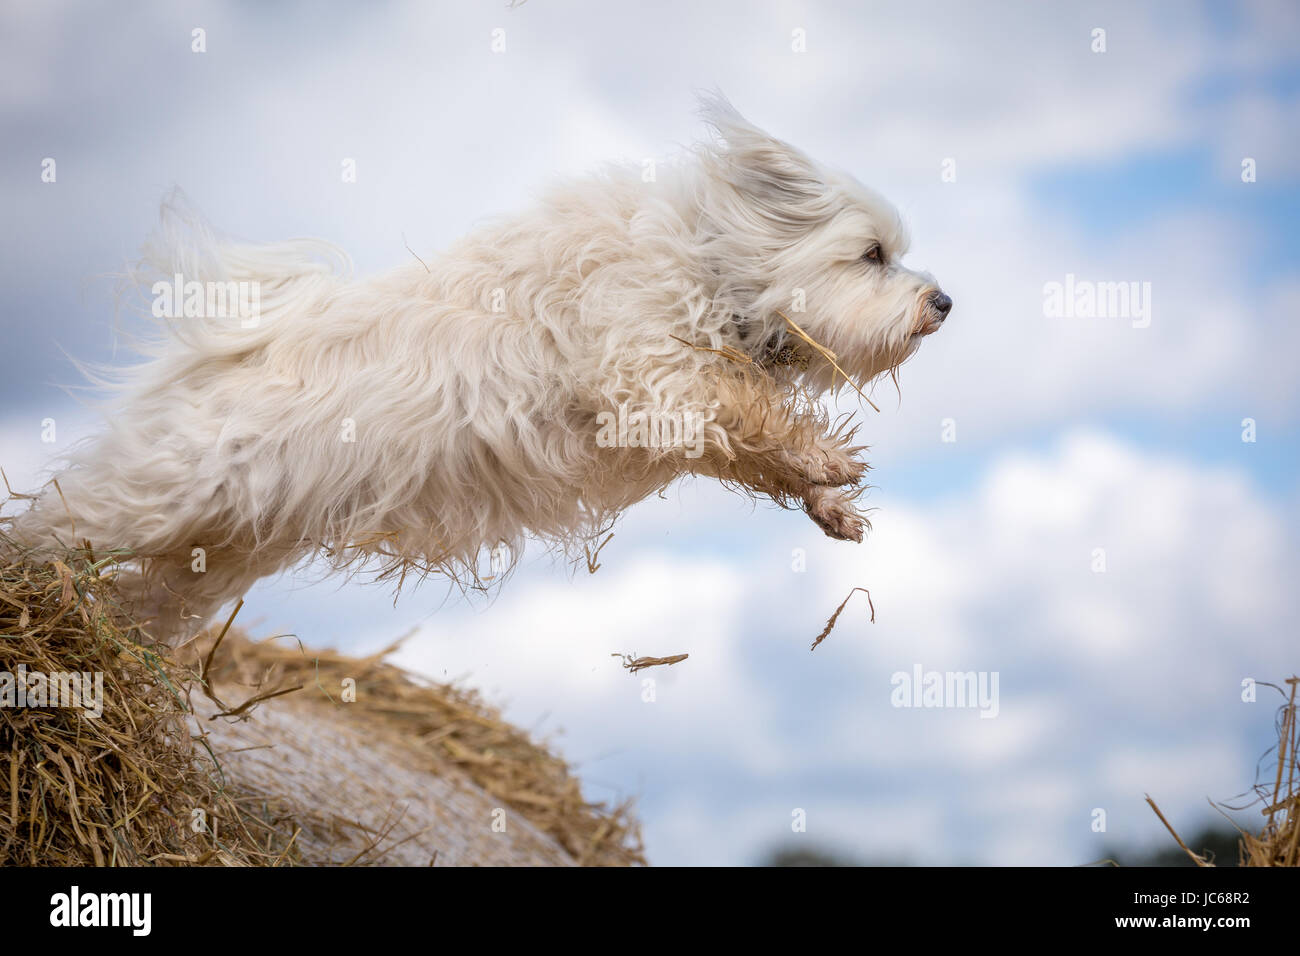 Kleiner weißer Hund springt von einem Strohballen zum nächsten. Stock Photo